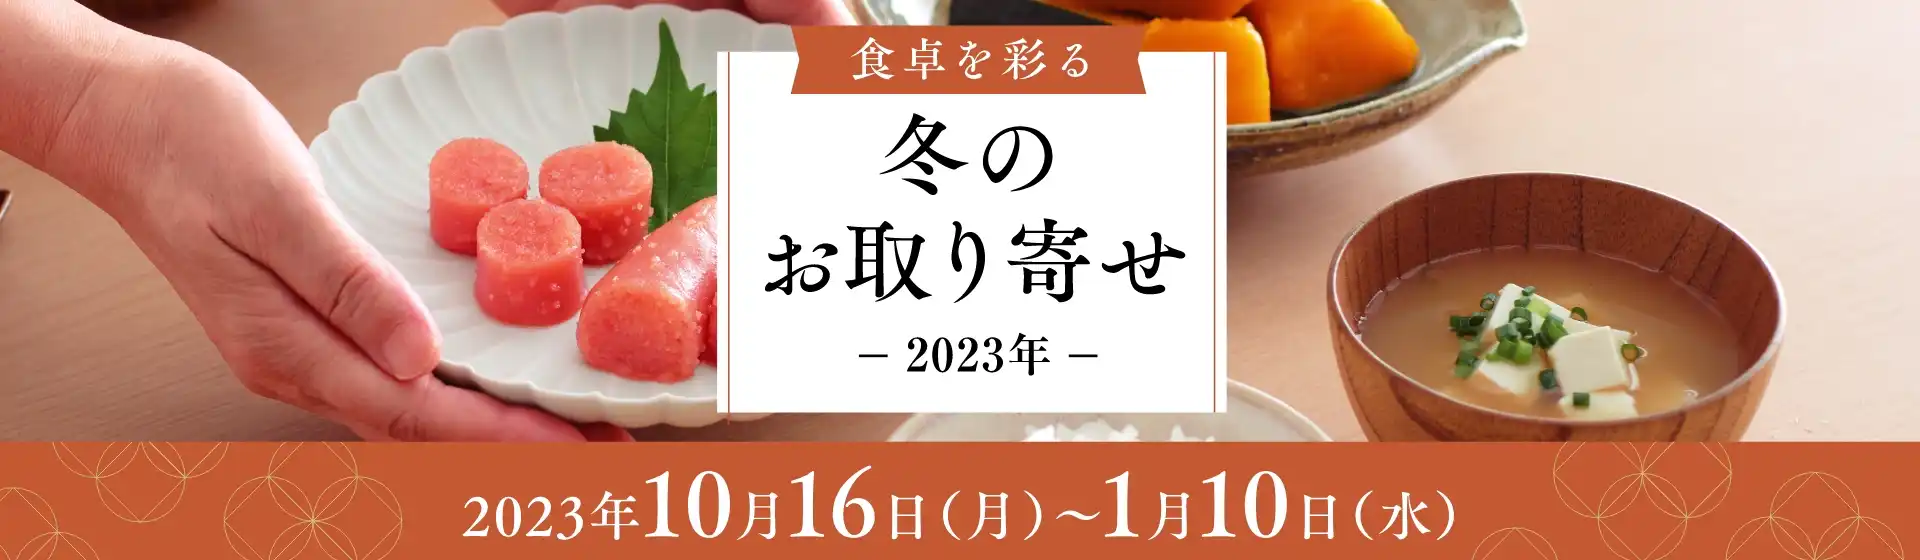 冬のお取り寄せ【開催期間】2023/10/16(月)~2024/1/10(水)